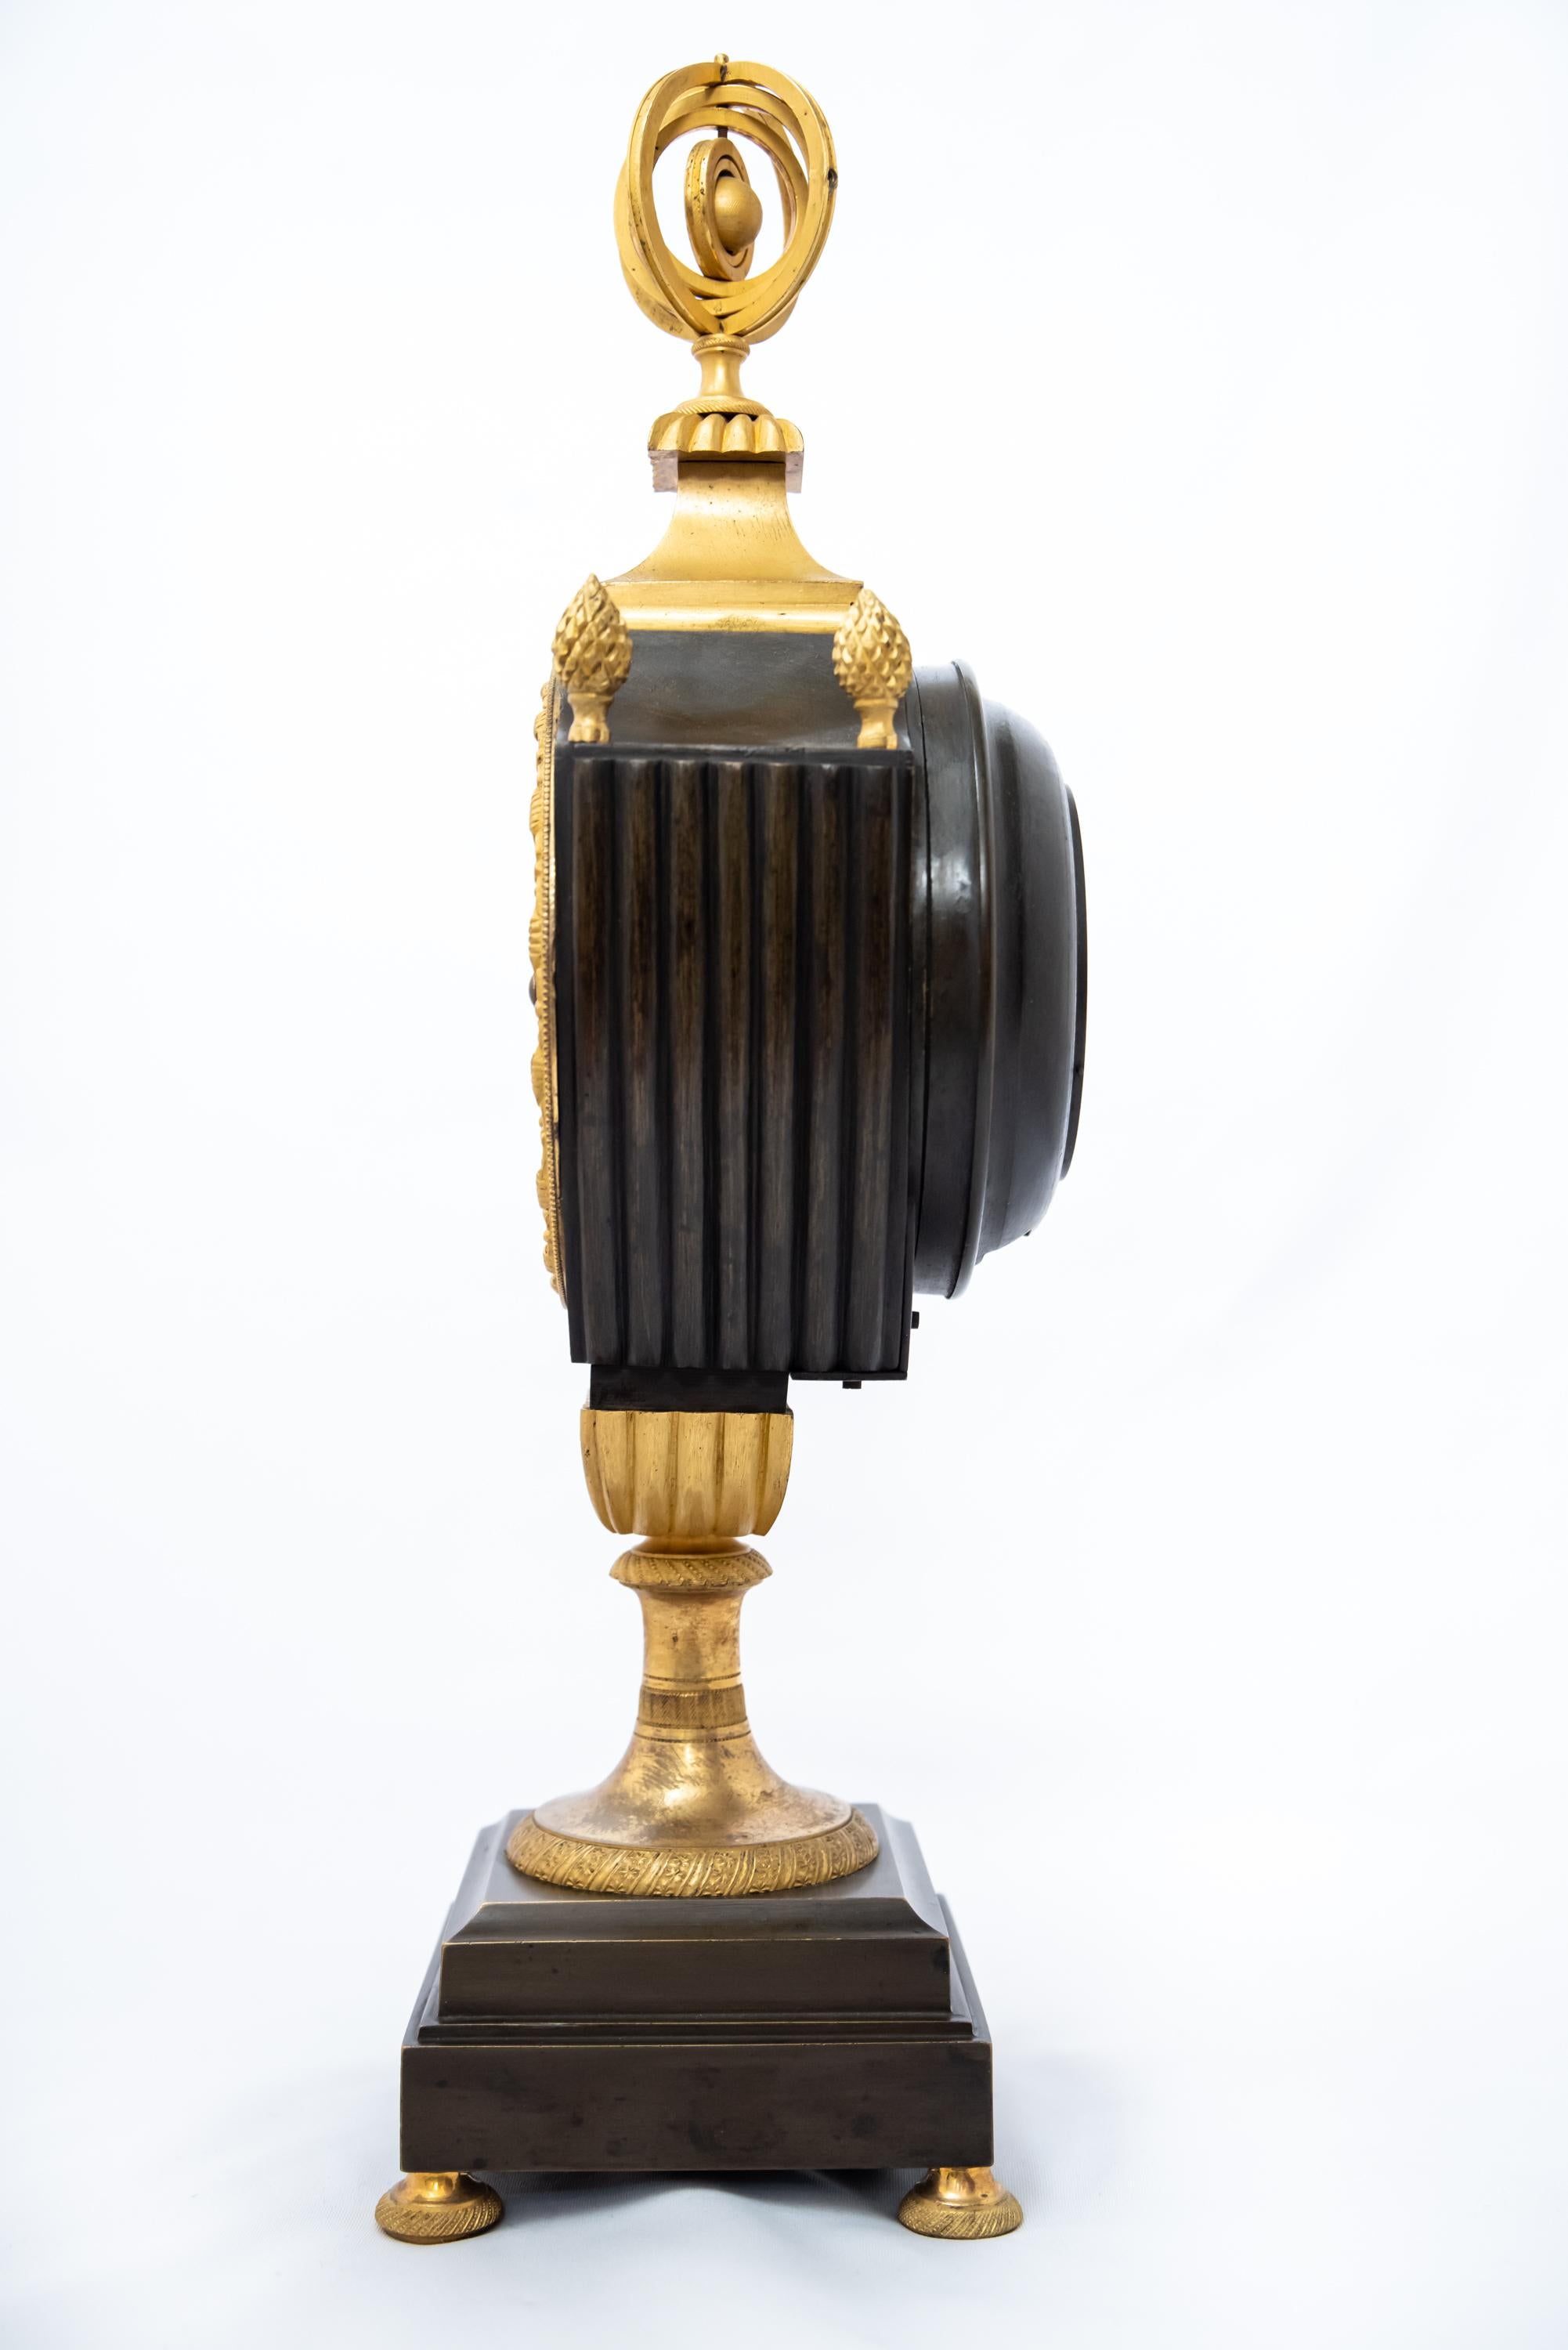 Pendule française patinée et dorée au feu en forme de vase, époque Empire, 1800-1815. Le mécanisme à fil de soie est en bon état de fonctionnement avec la clé et le pendule.